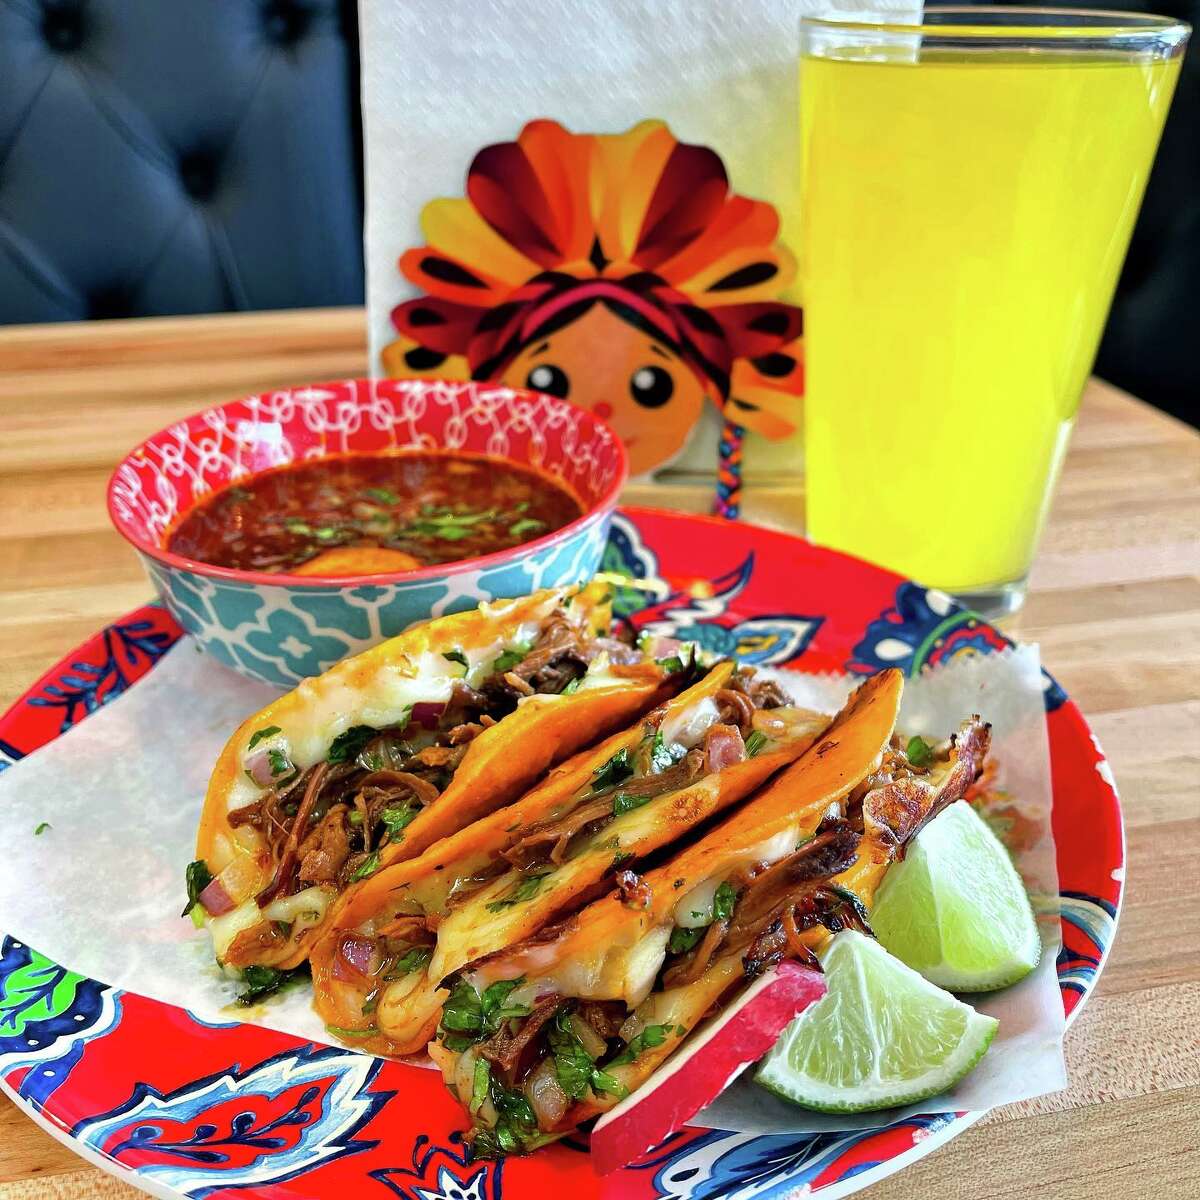 MilSabores taco truck on hold, but Bridgeport restaurant is open